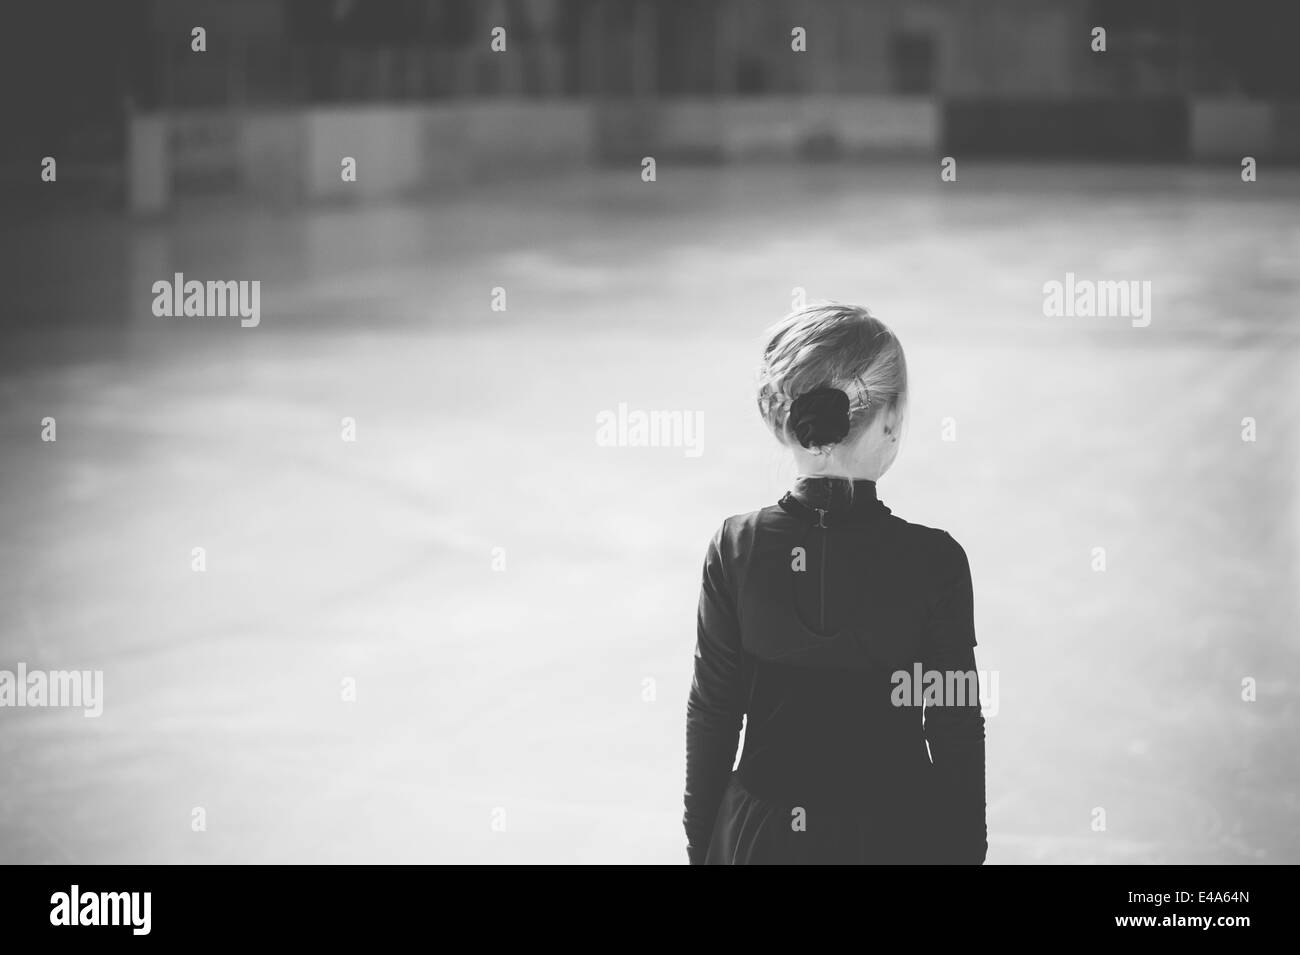 Figura femenina joven patinador de pie en la pista de patinaje sobre hielo en la competencia, vista posterior Foto de stock